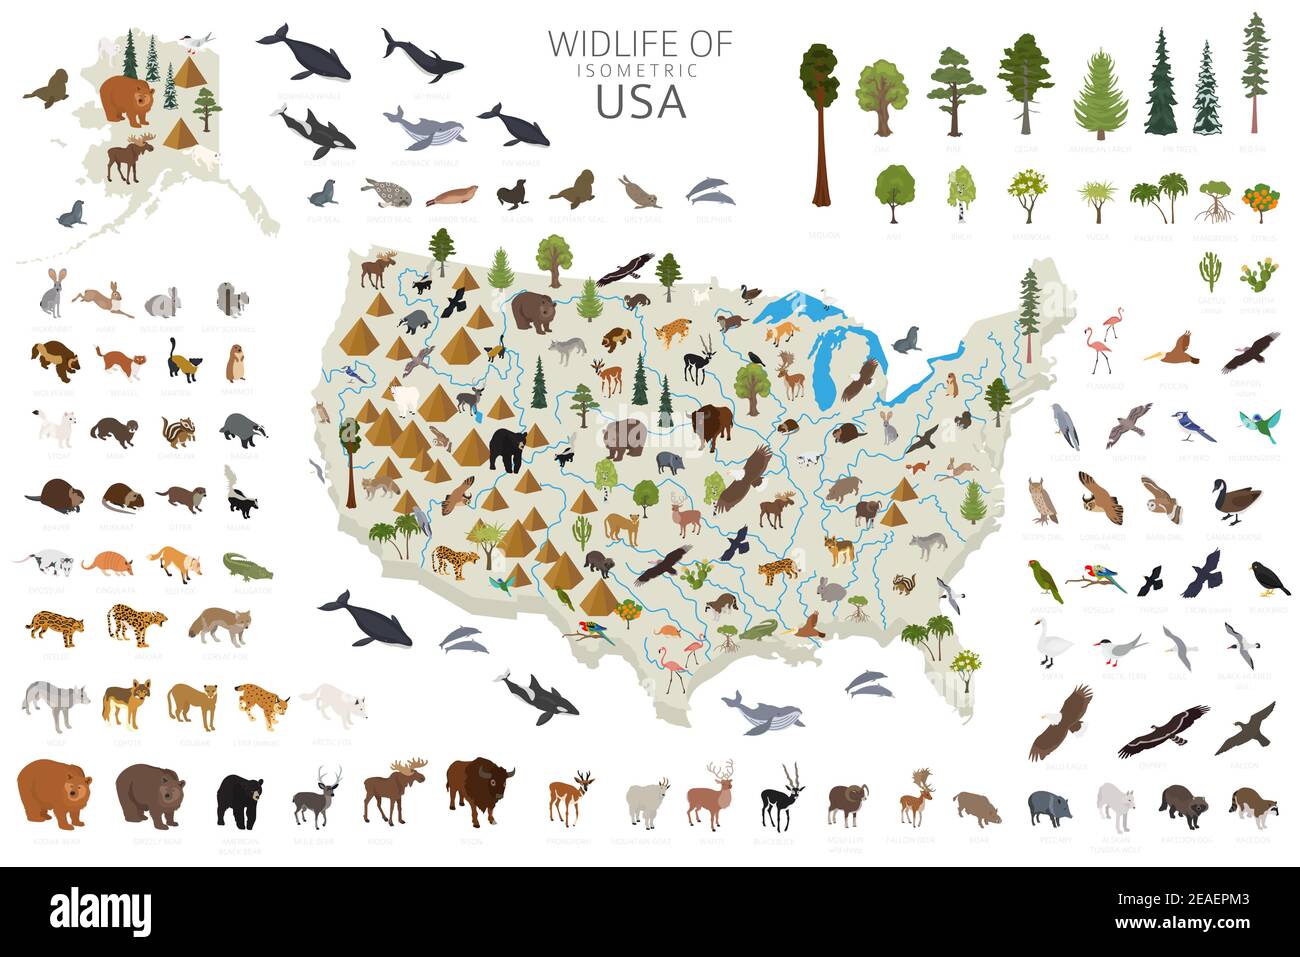 3d isometrico della fauna selvatica degli Stati Uniti. Elementi costruttivi di animali, uccelli e piante isolati su set bianco. Crea la tua raccolta di infografiche geografiche. Illustrazione Vettoriale